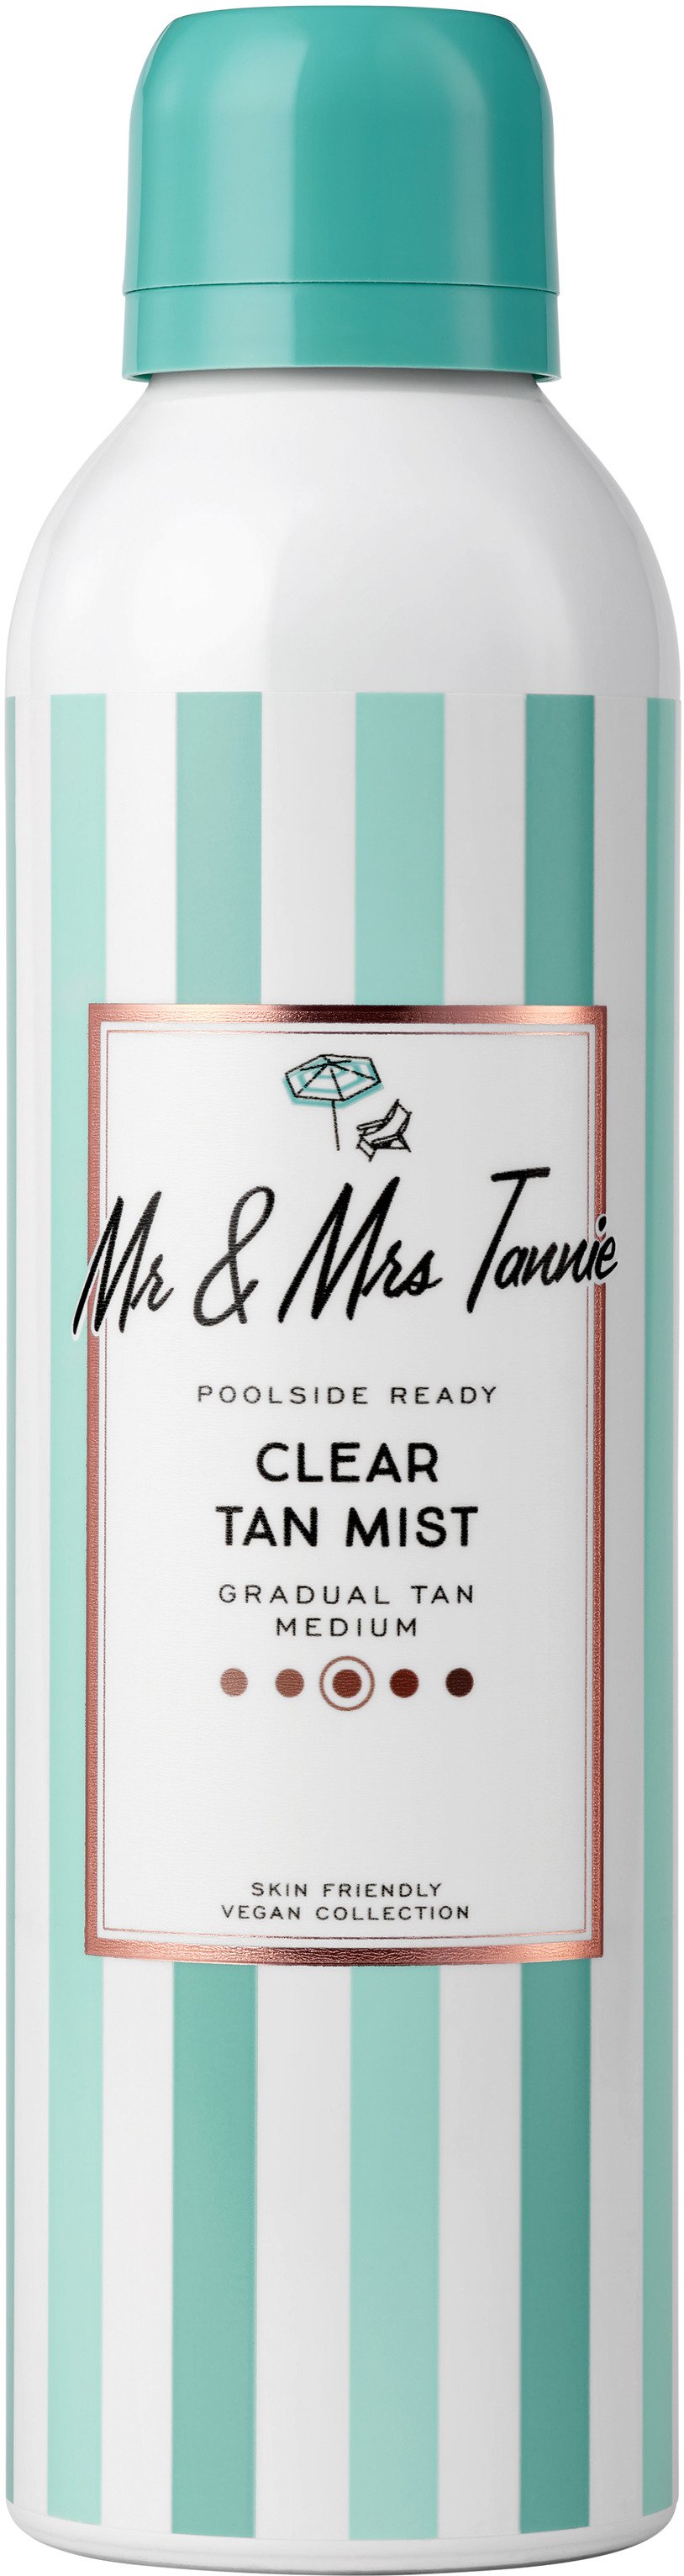 Mr & Mrs Tannie Clear Tan Mist 200 ml